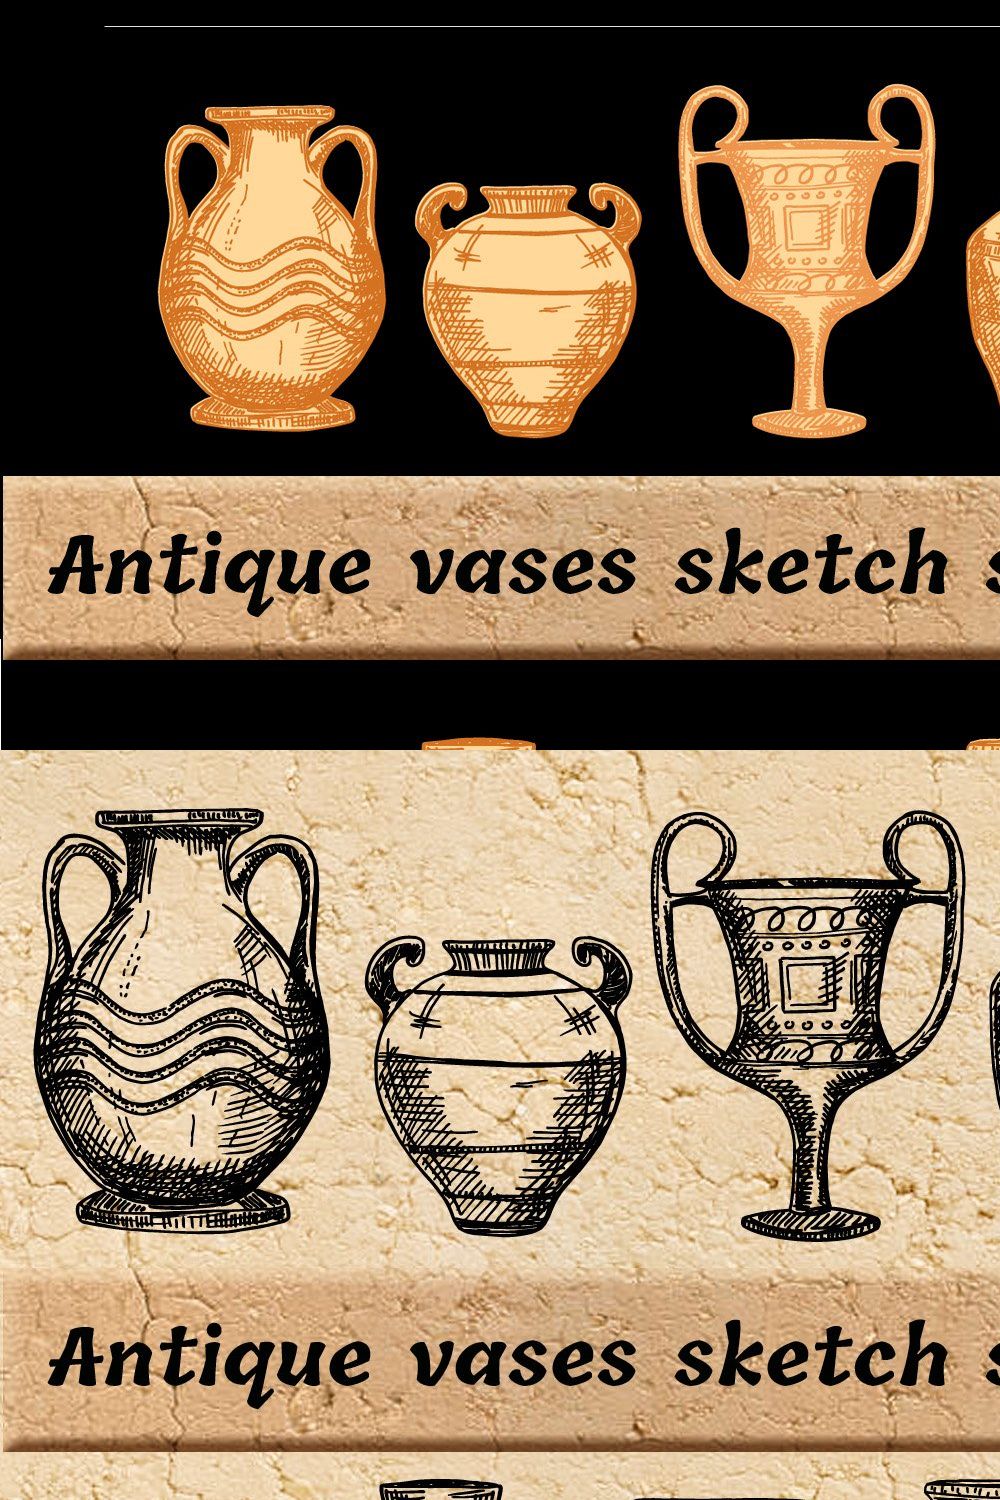 Antique Greek vases set. Sketch pinterest preview image.